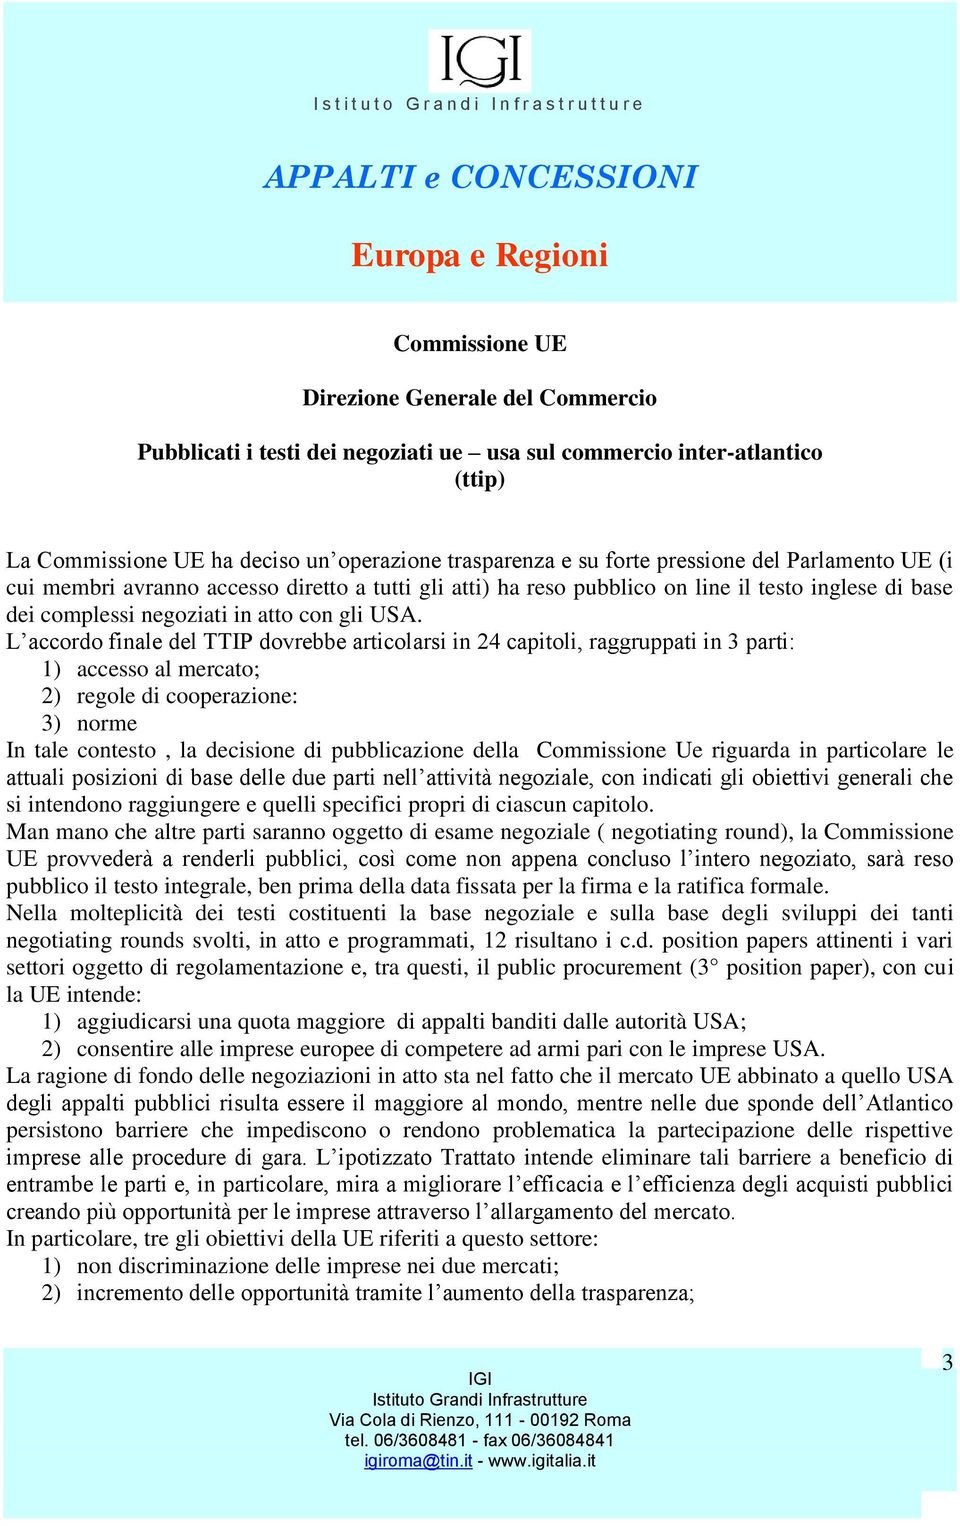 L f TT P 4, gg 3 : 1) accesso al mercato; 2) regole di cooperazione: 3) norme In tale contesto, la decisione di pubblicazione della Commissione Ue riguarda in particolare le g, g g h si intendono